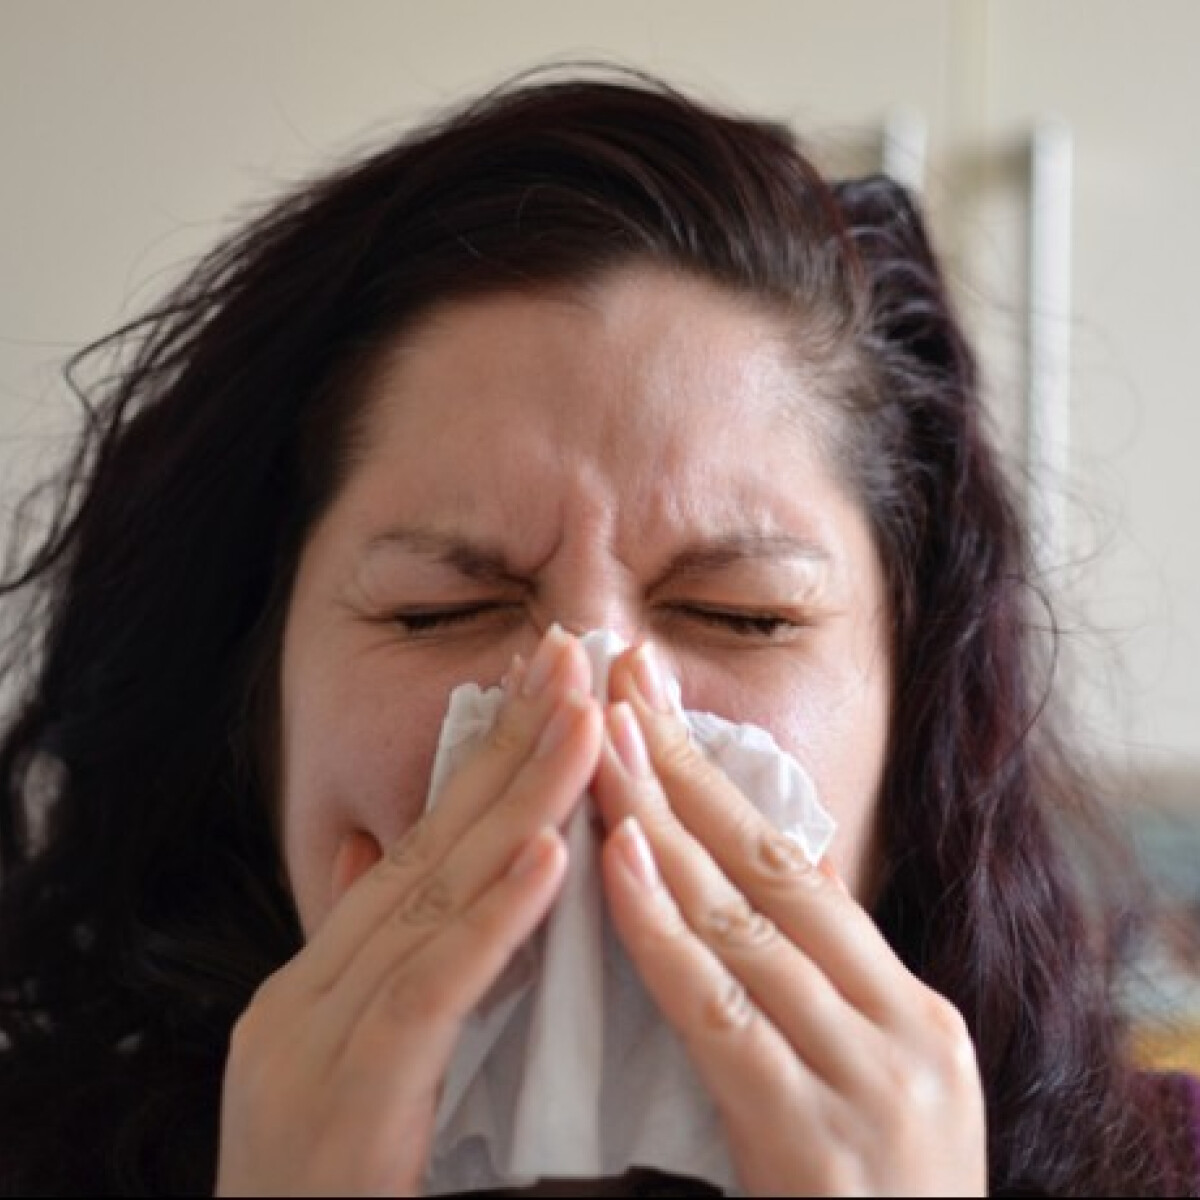 Allergiával a járványban: most érdemes óvatosabbnak lenni